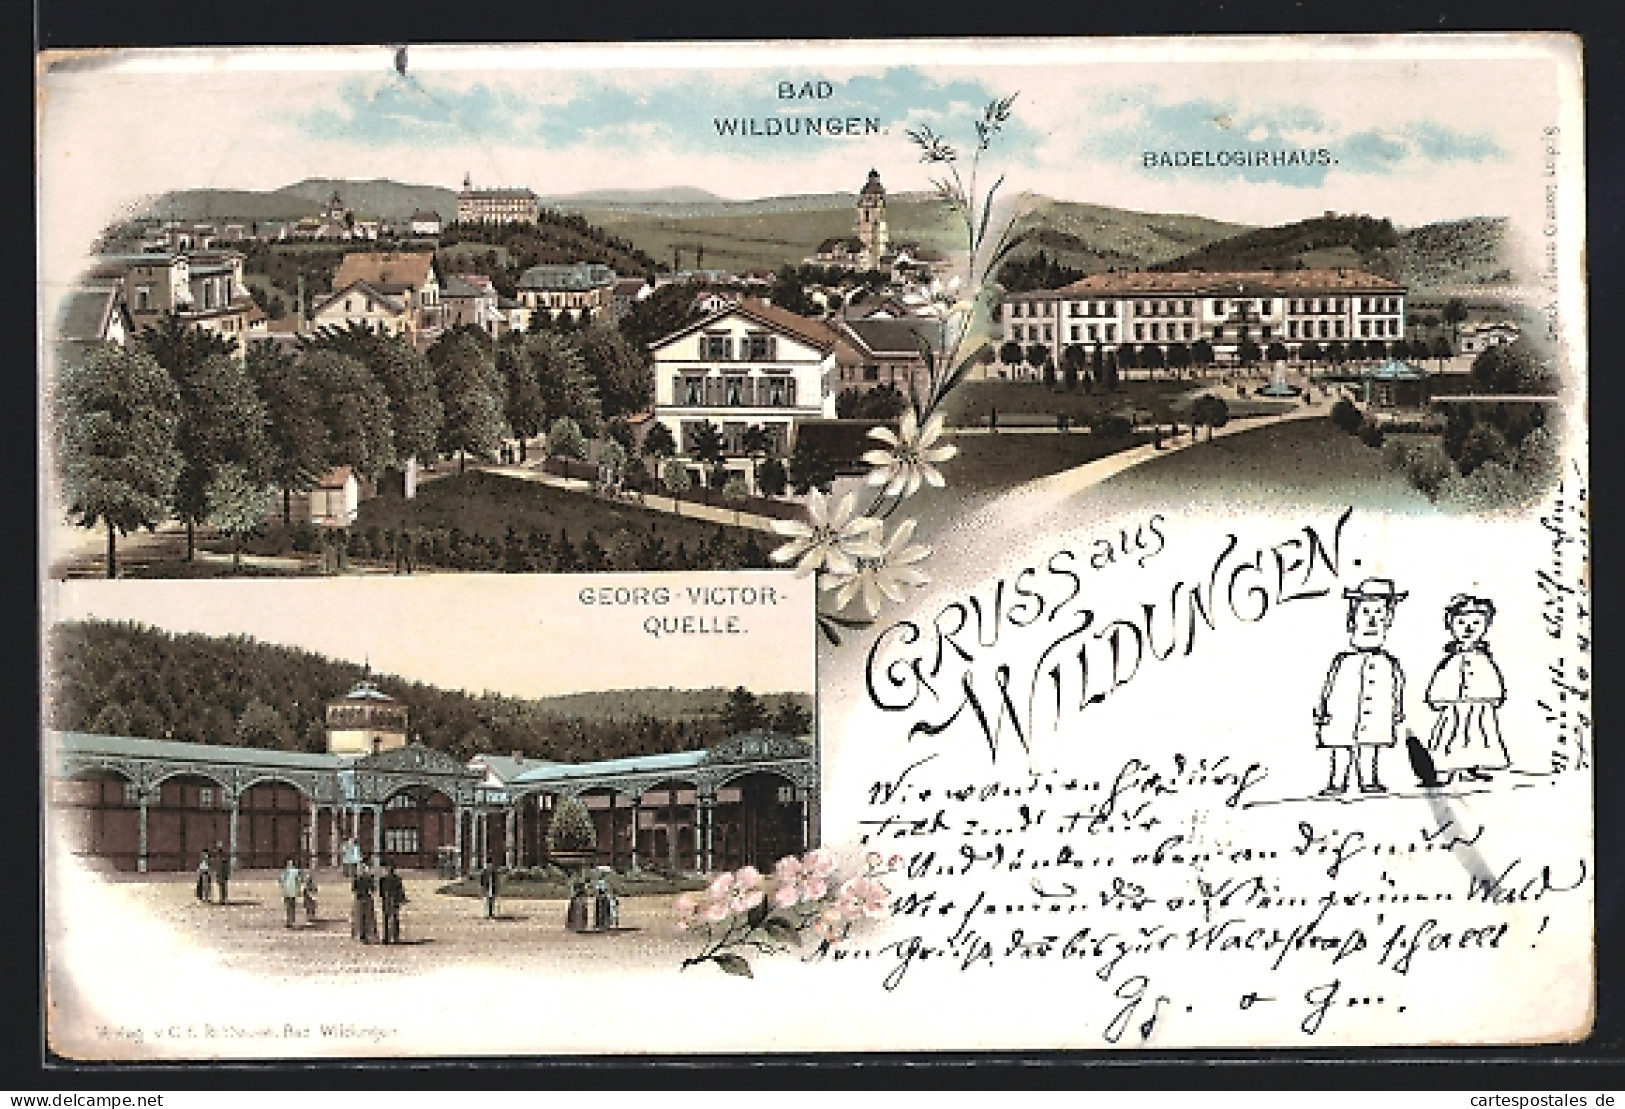 Lithographie Wildungen, Badelogirhaus, Georg-Victor-Quelle, Panorama  - Bad Wildungen